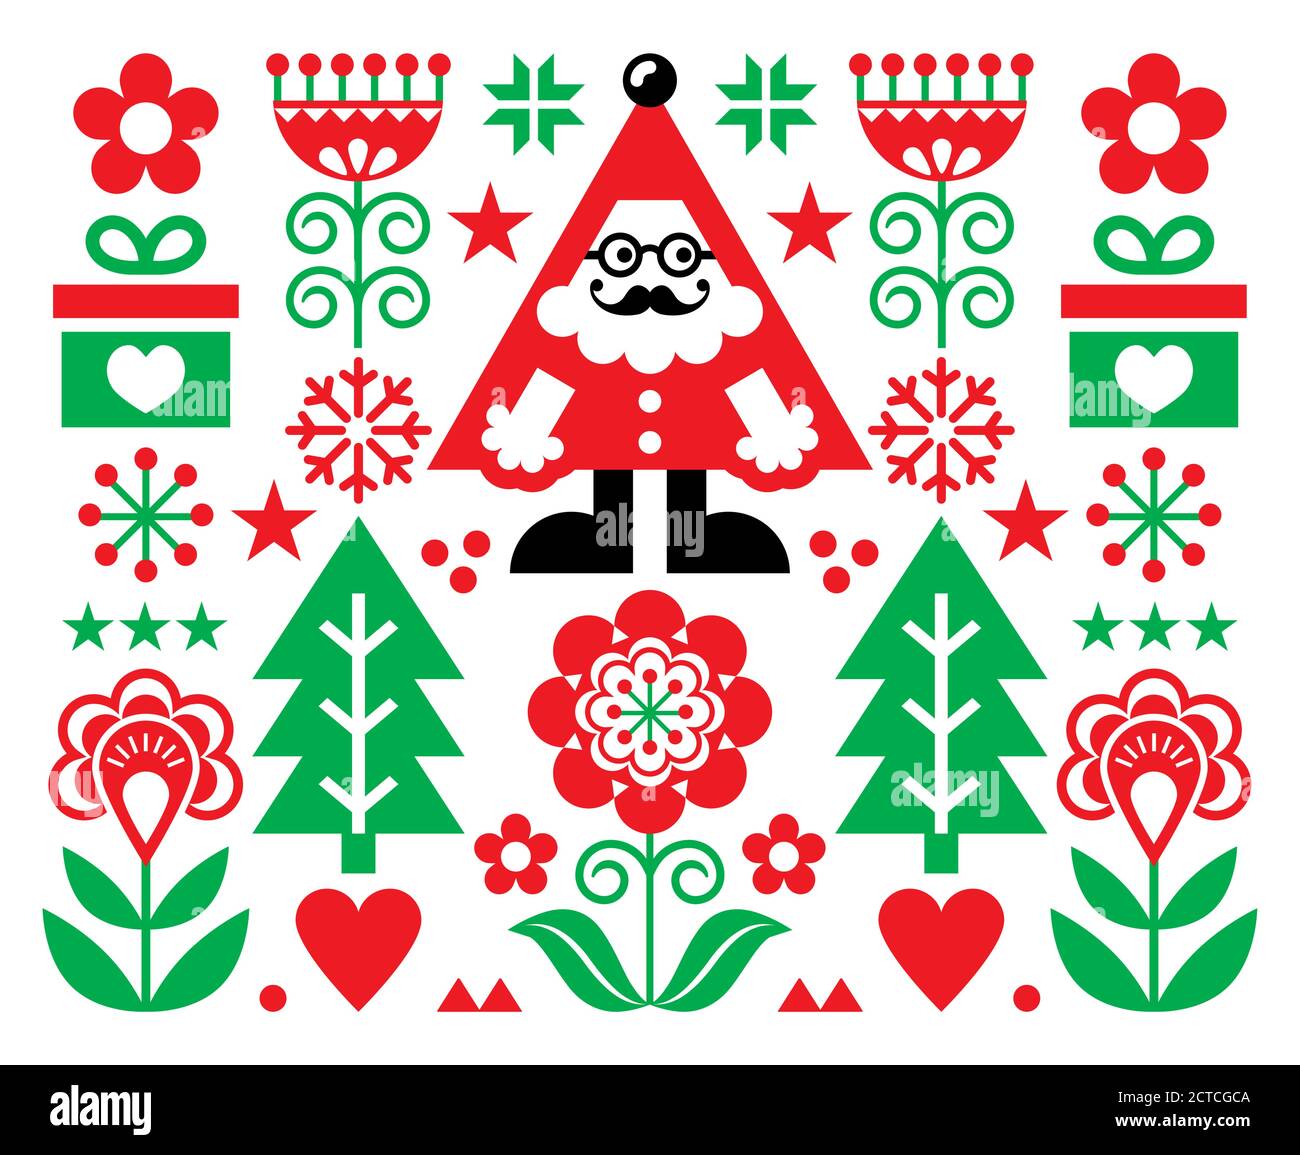 Weihnachten Santa Vektor Grußkarte Design, Scandianvian Volkskunst Stil festlichen Hintergrund in rot und grün Stock Vektor